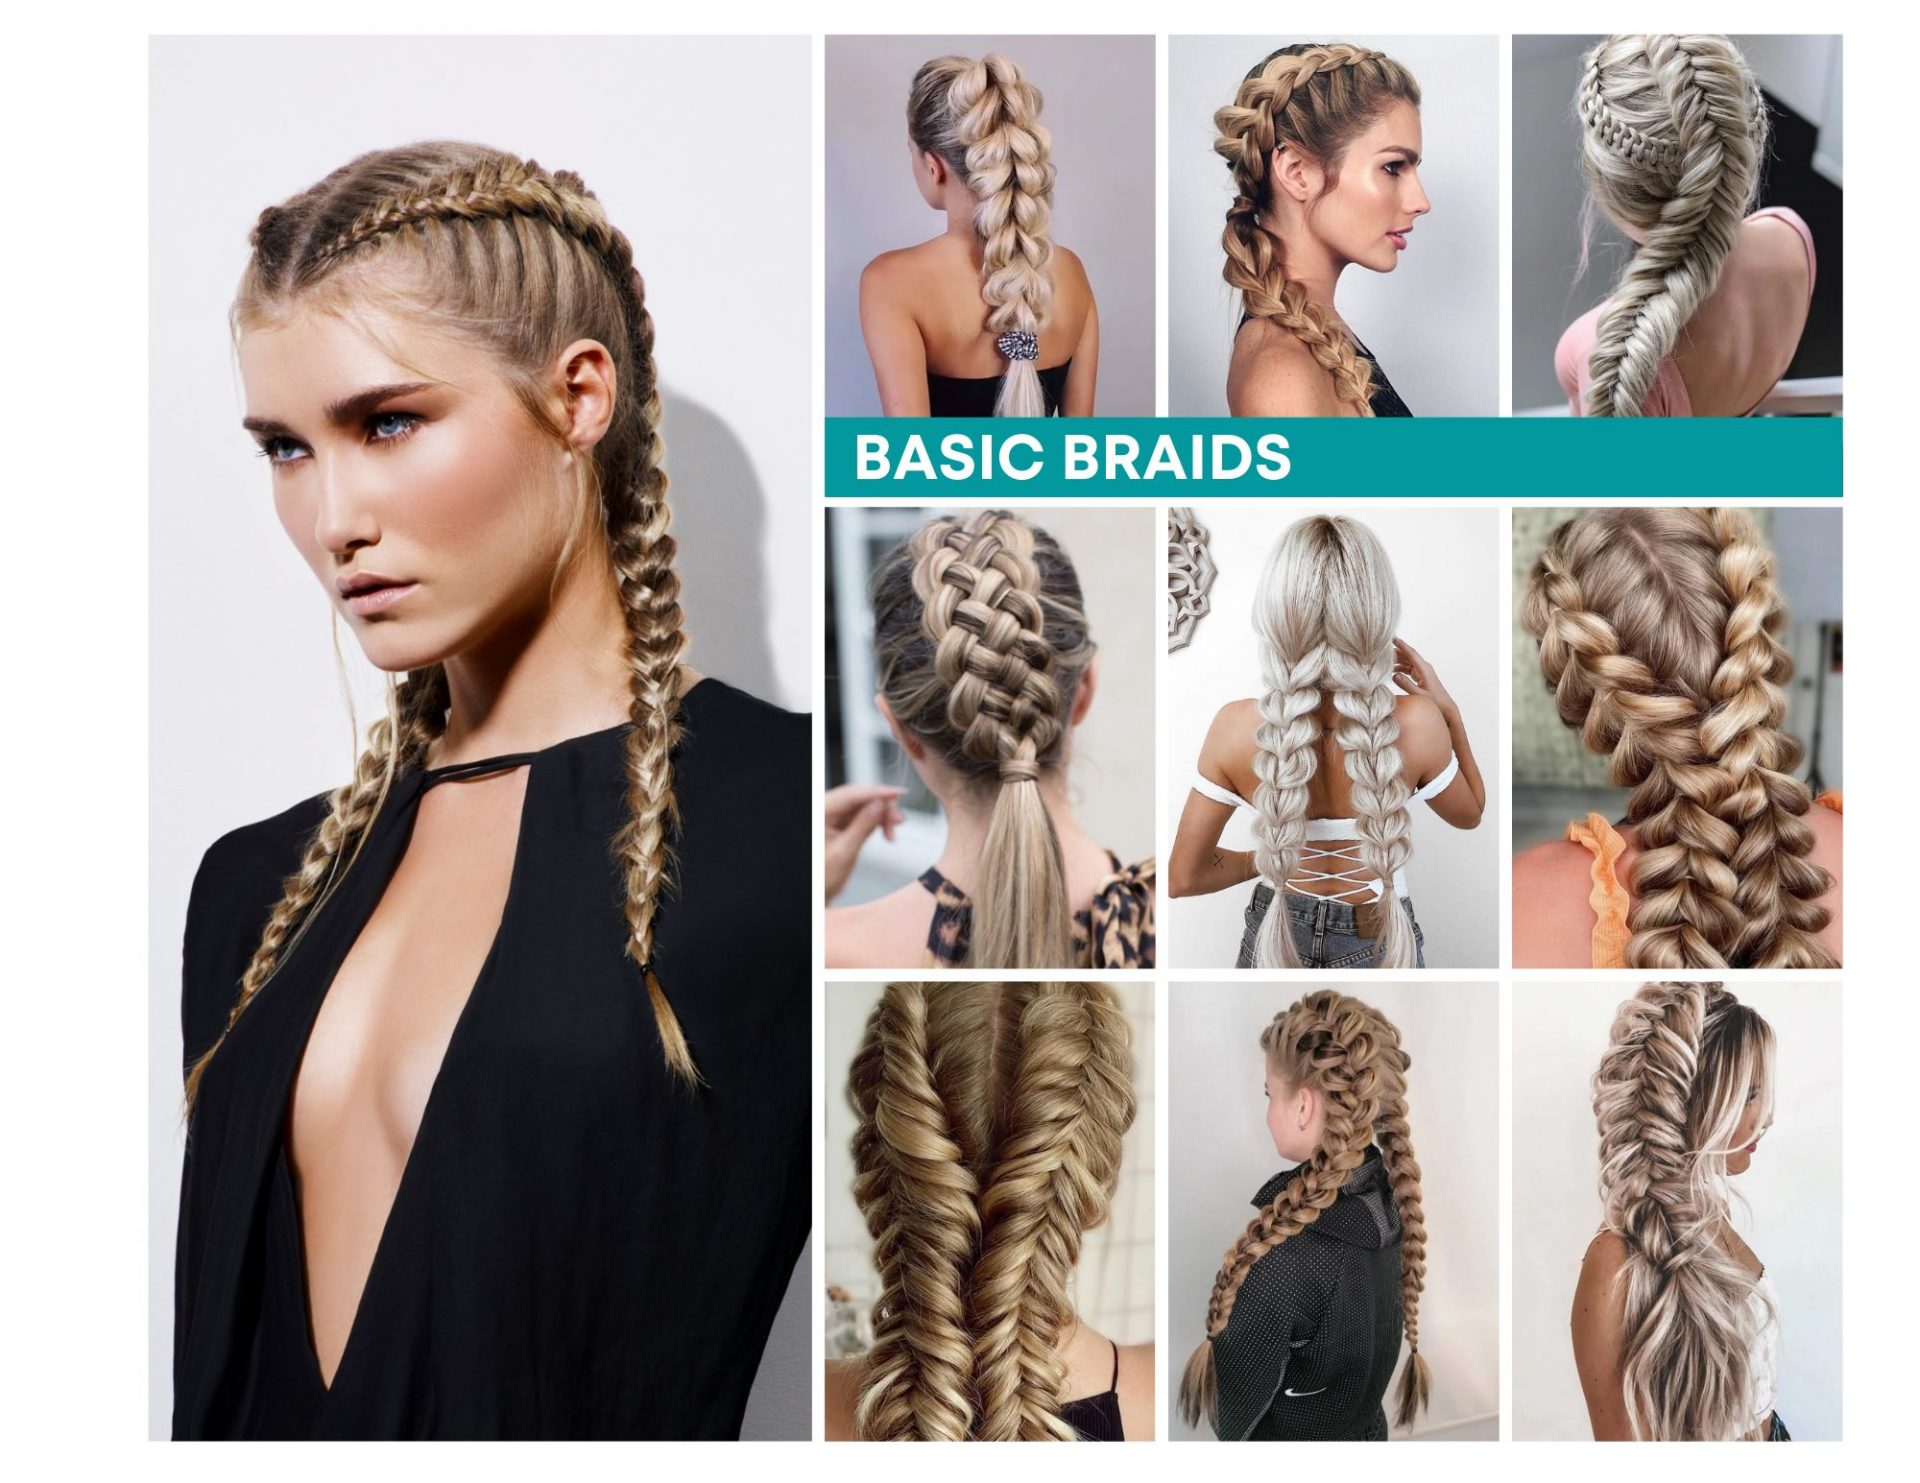 Basic braids